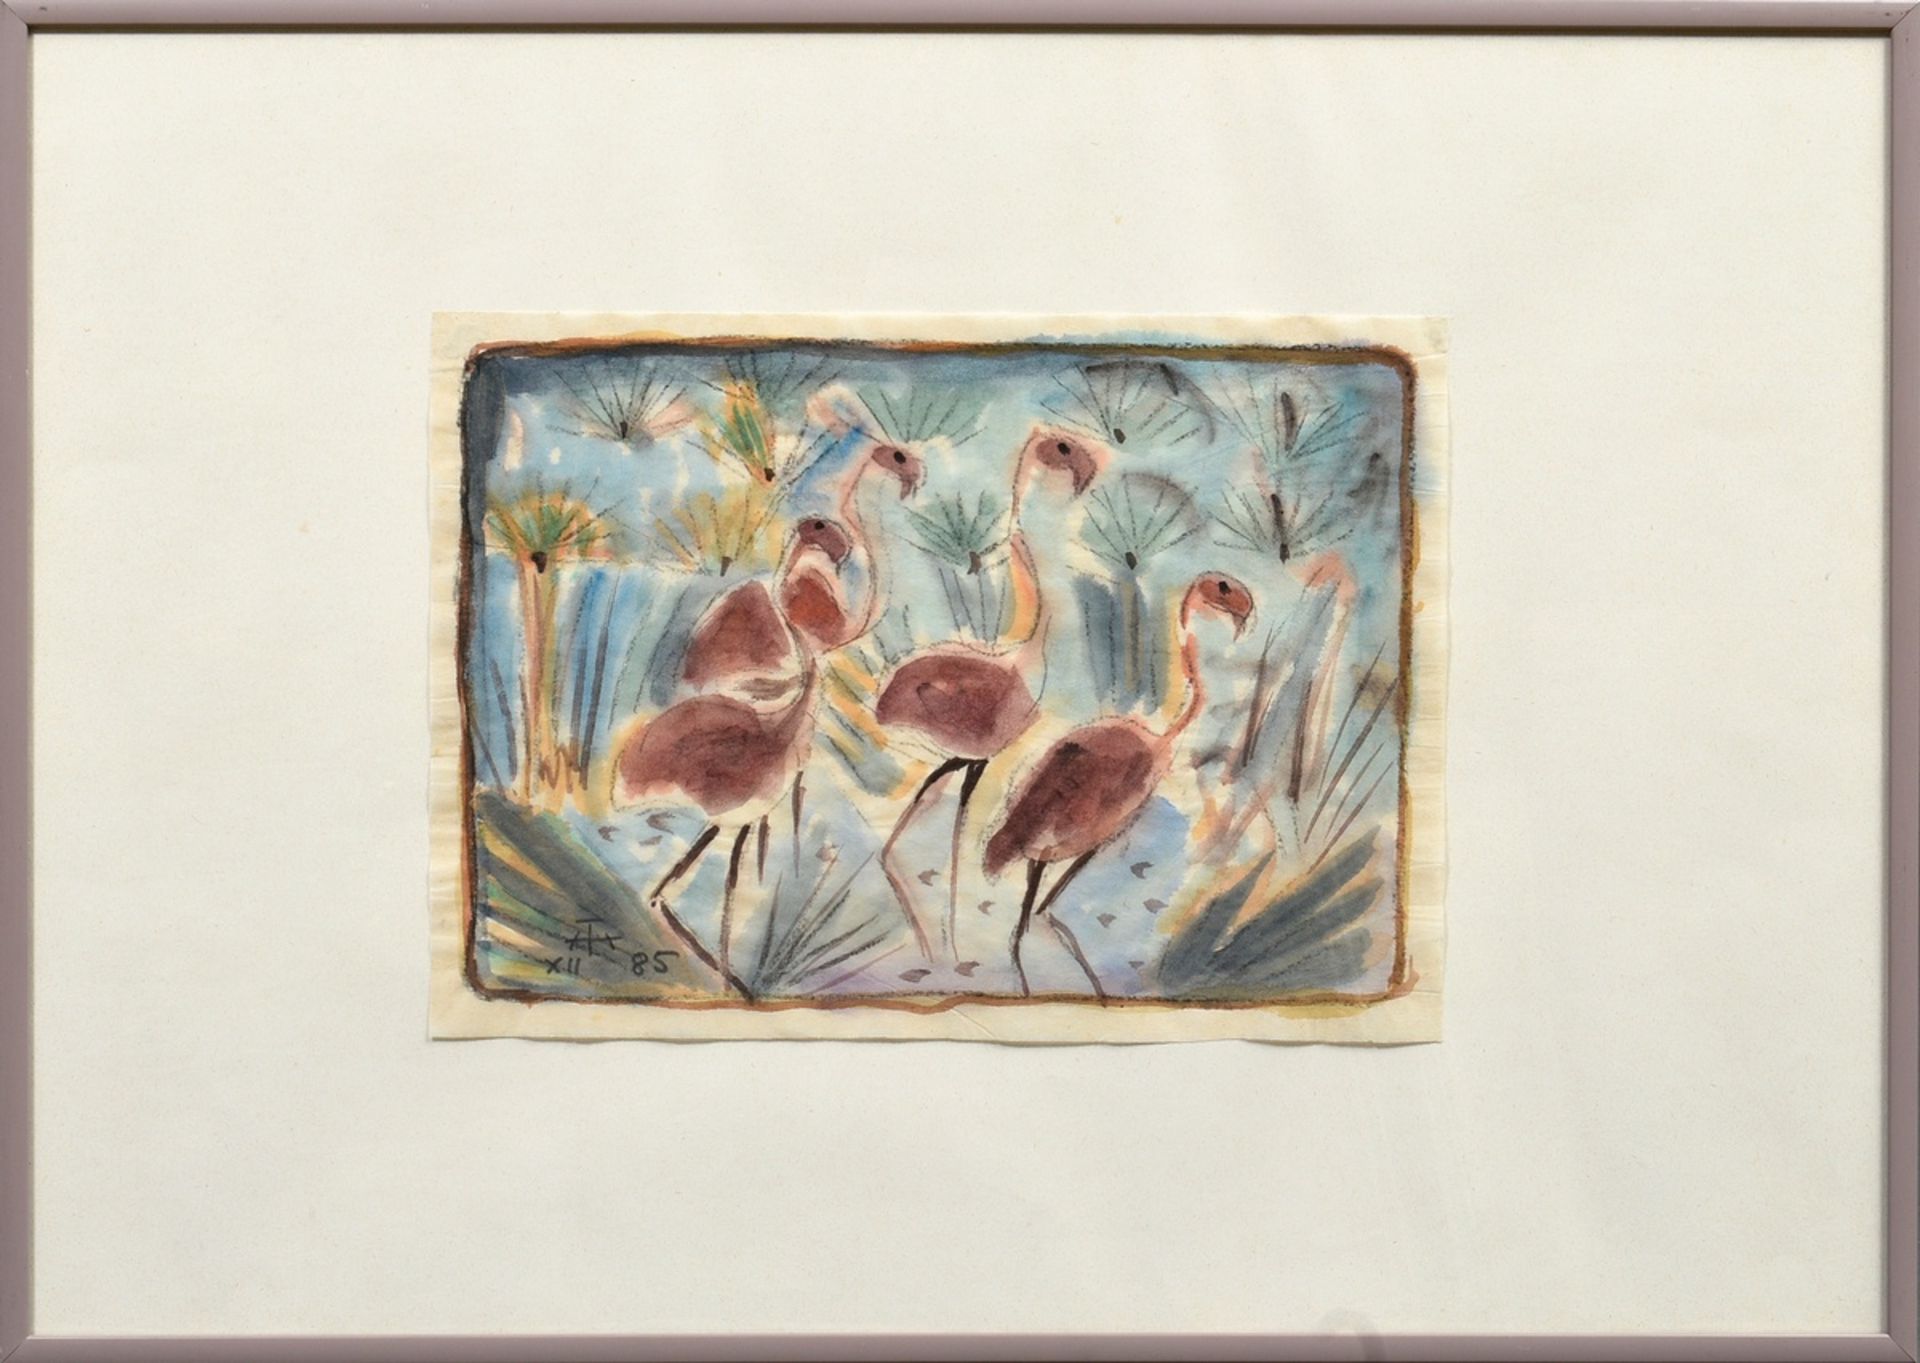 Theuerjahr, Heinz (1913-1991) "Flamingos" 1985, charcoal/watercolour, b.l. monogr./dat., SM 23x32cm - Image 2 of 3